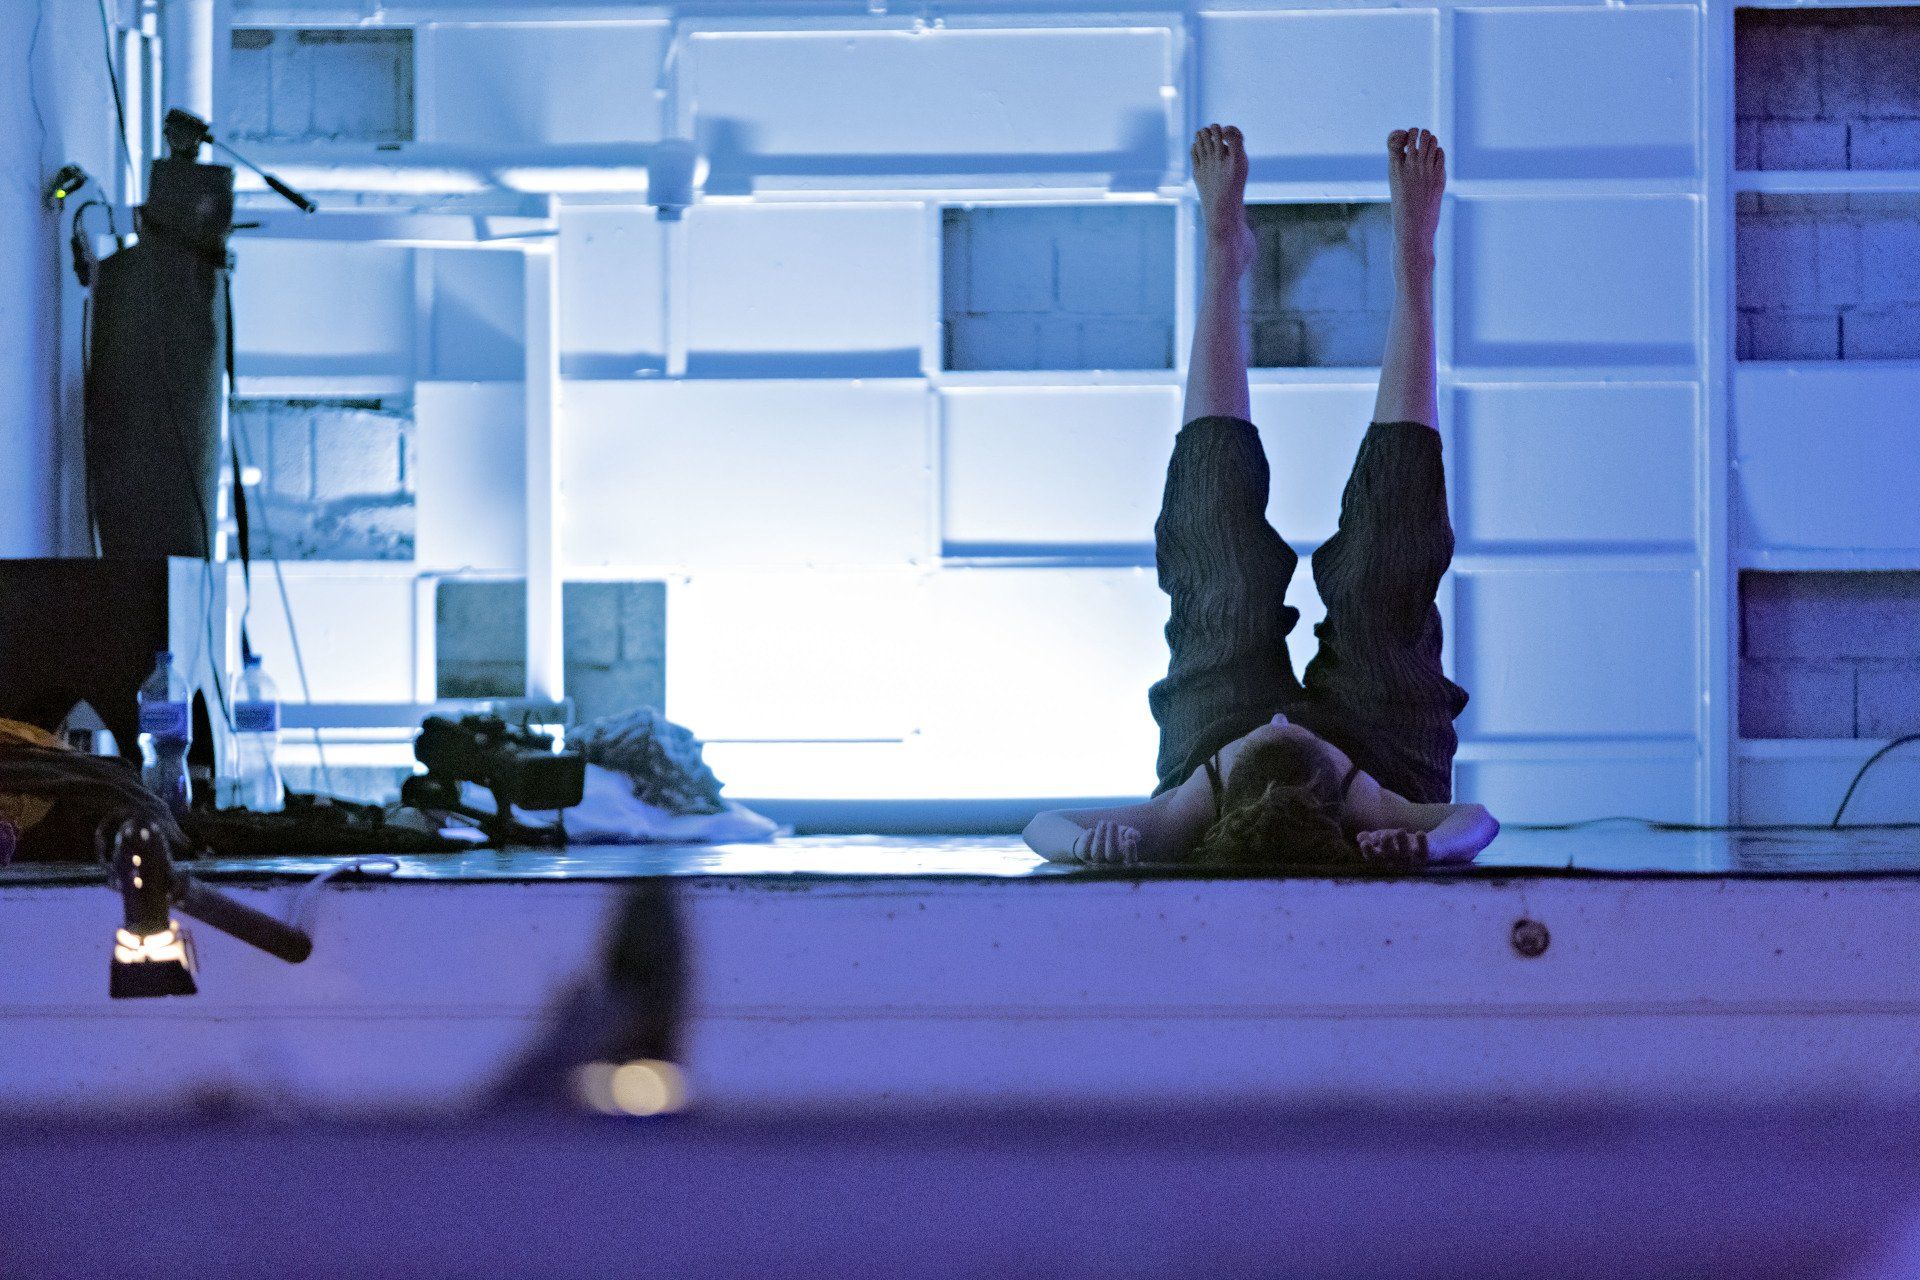 femme couchée sur le sol d'une pièce éclairée en bleu